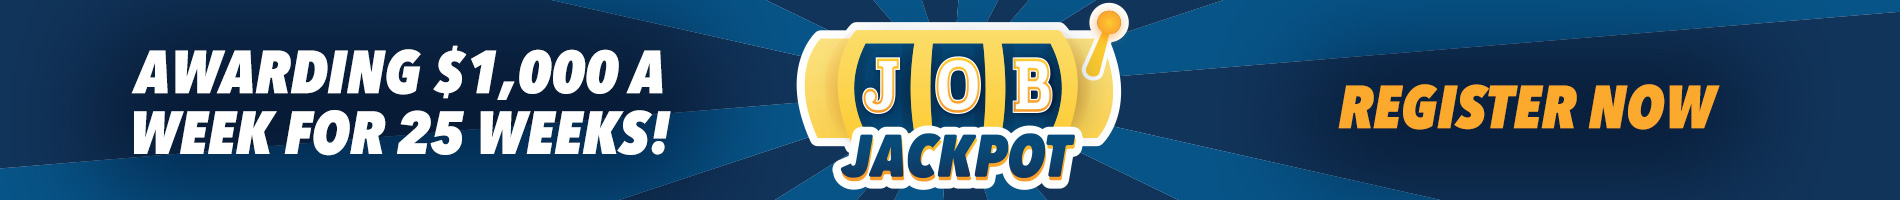 Job Jackpot Banner